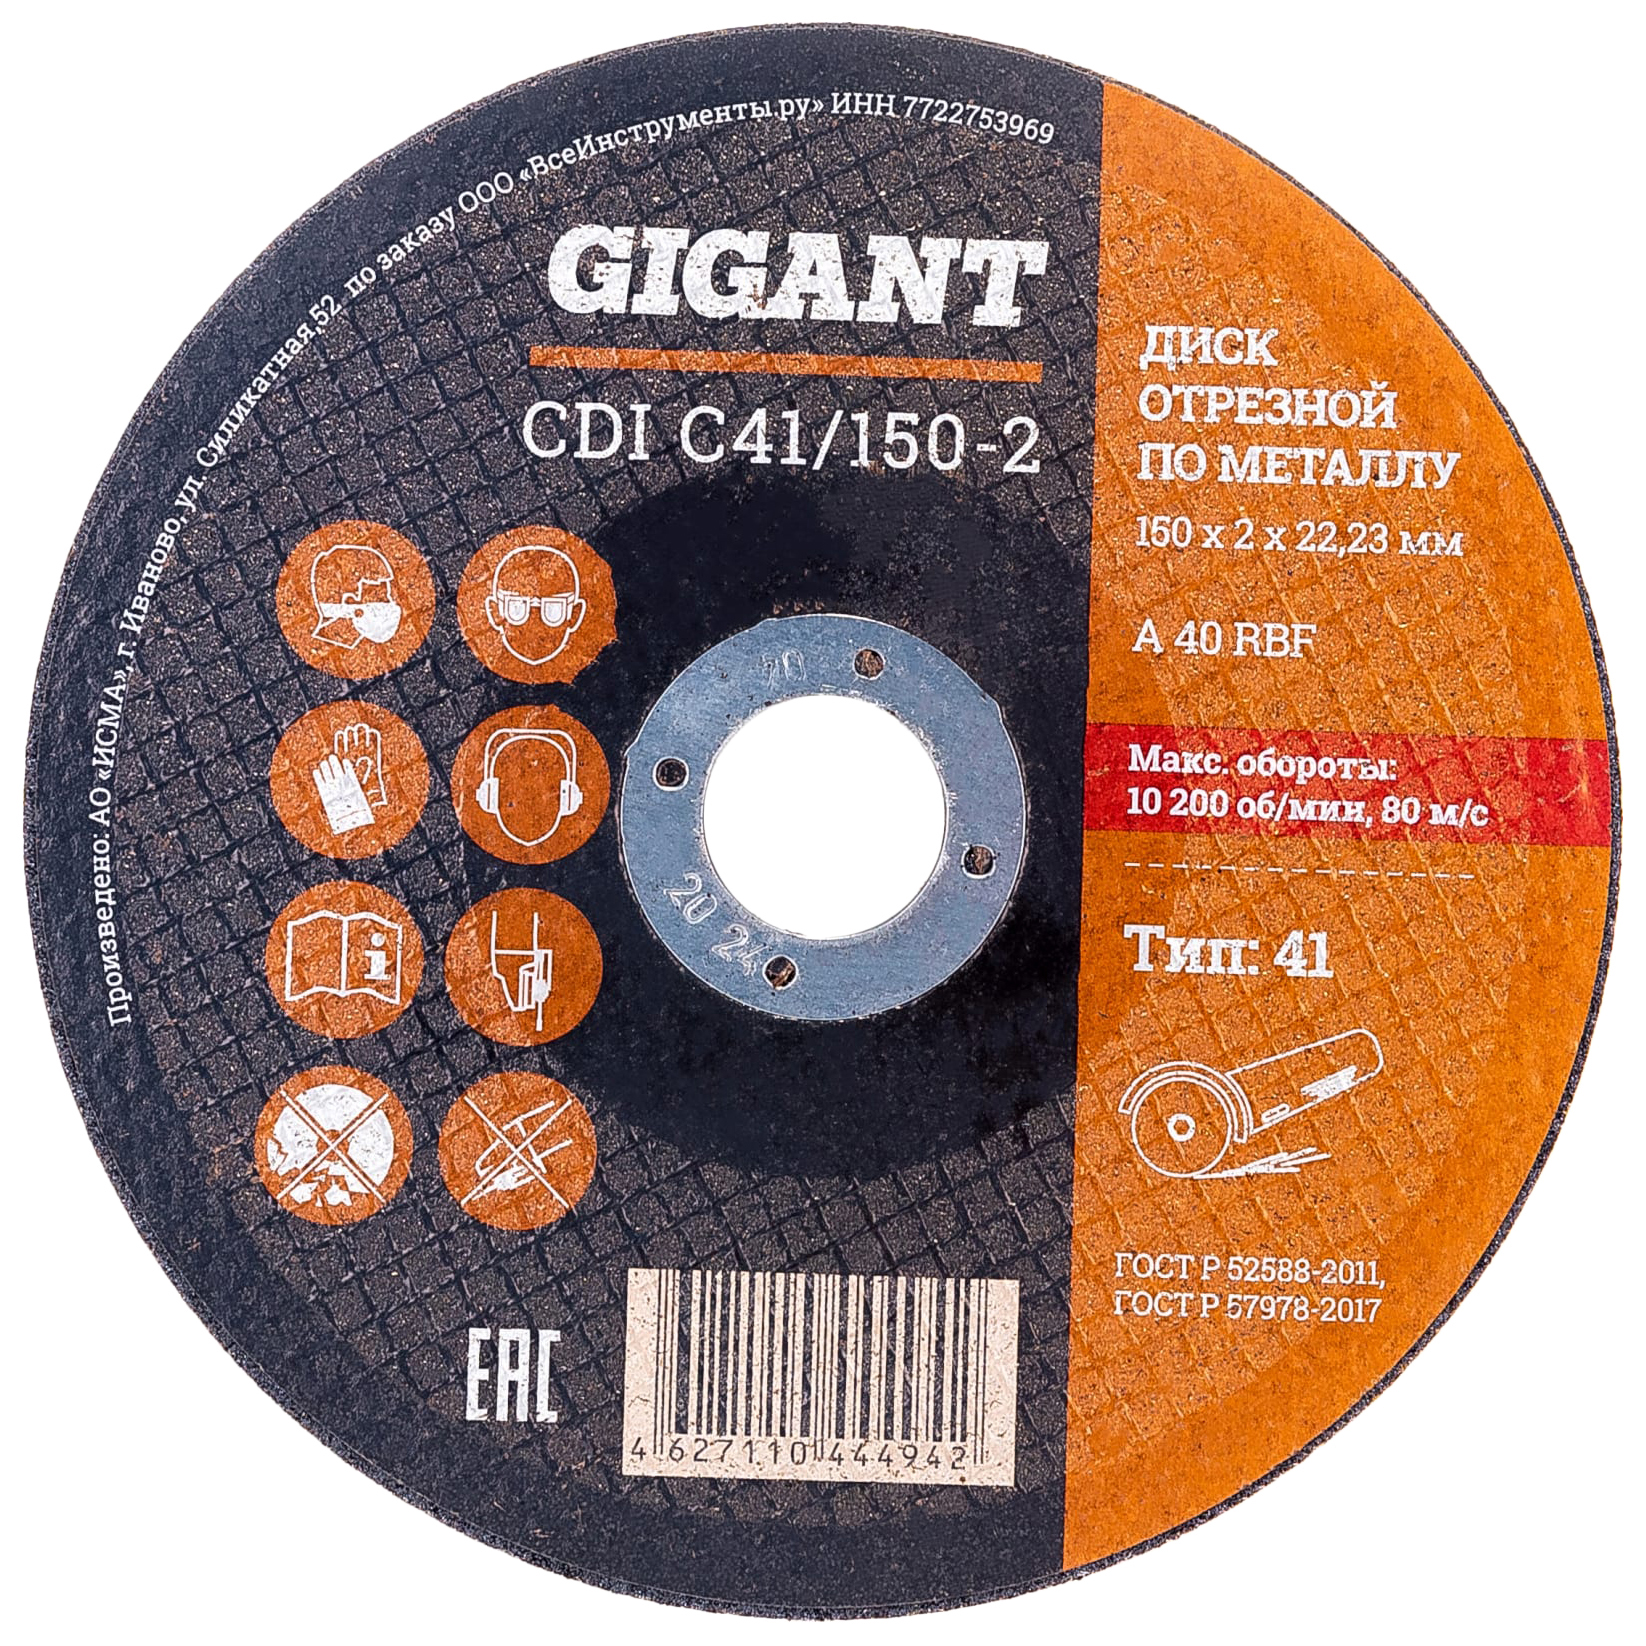 фото Gigant диск отрезной по металлу 150x22x2 мм сdi c41/150-2